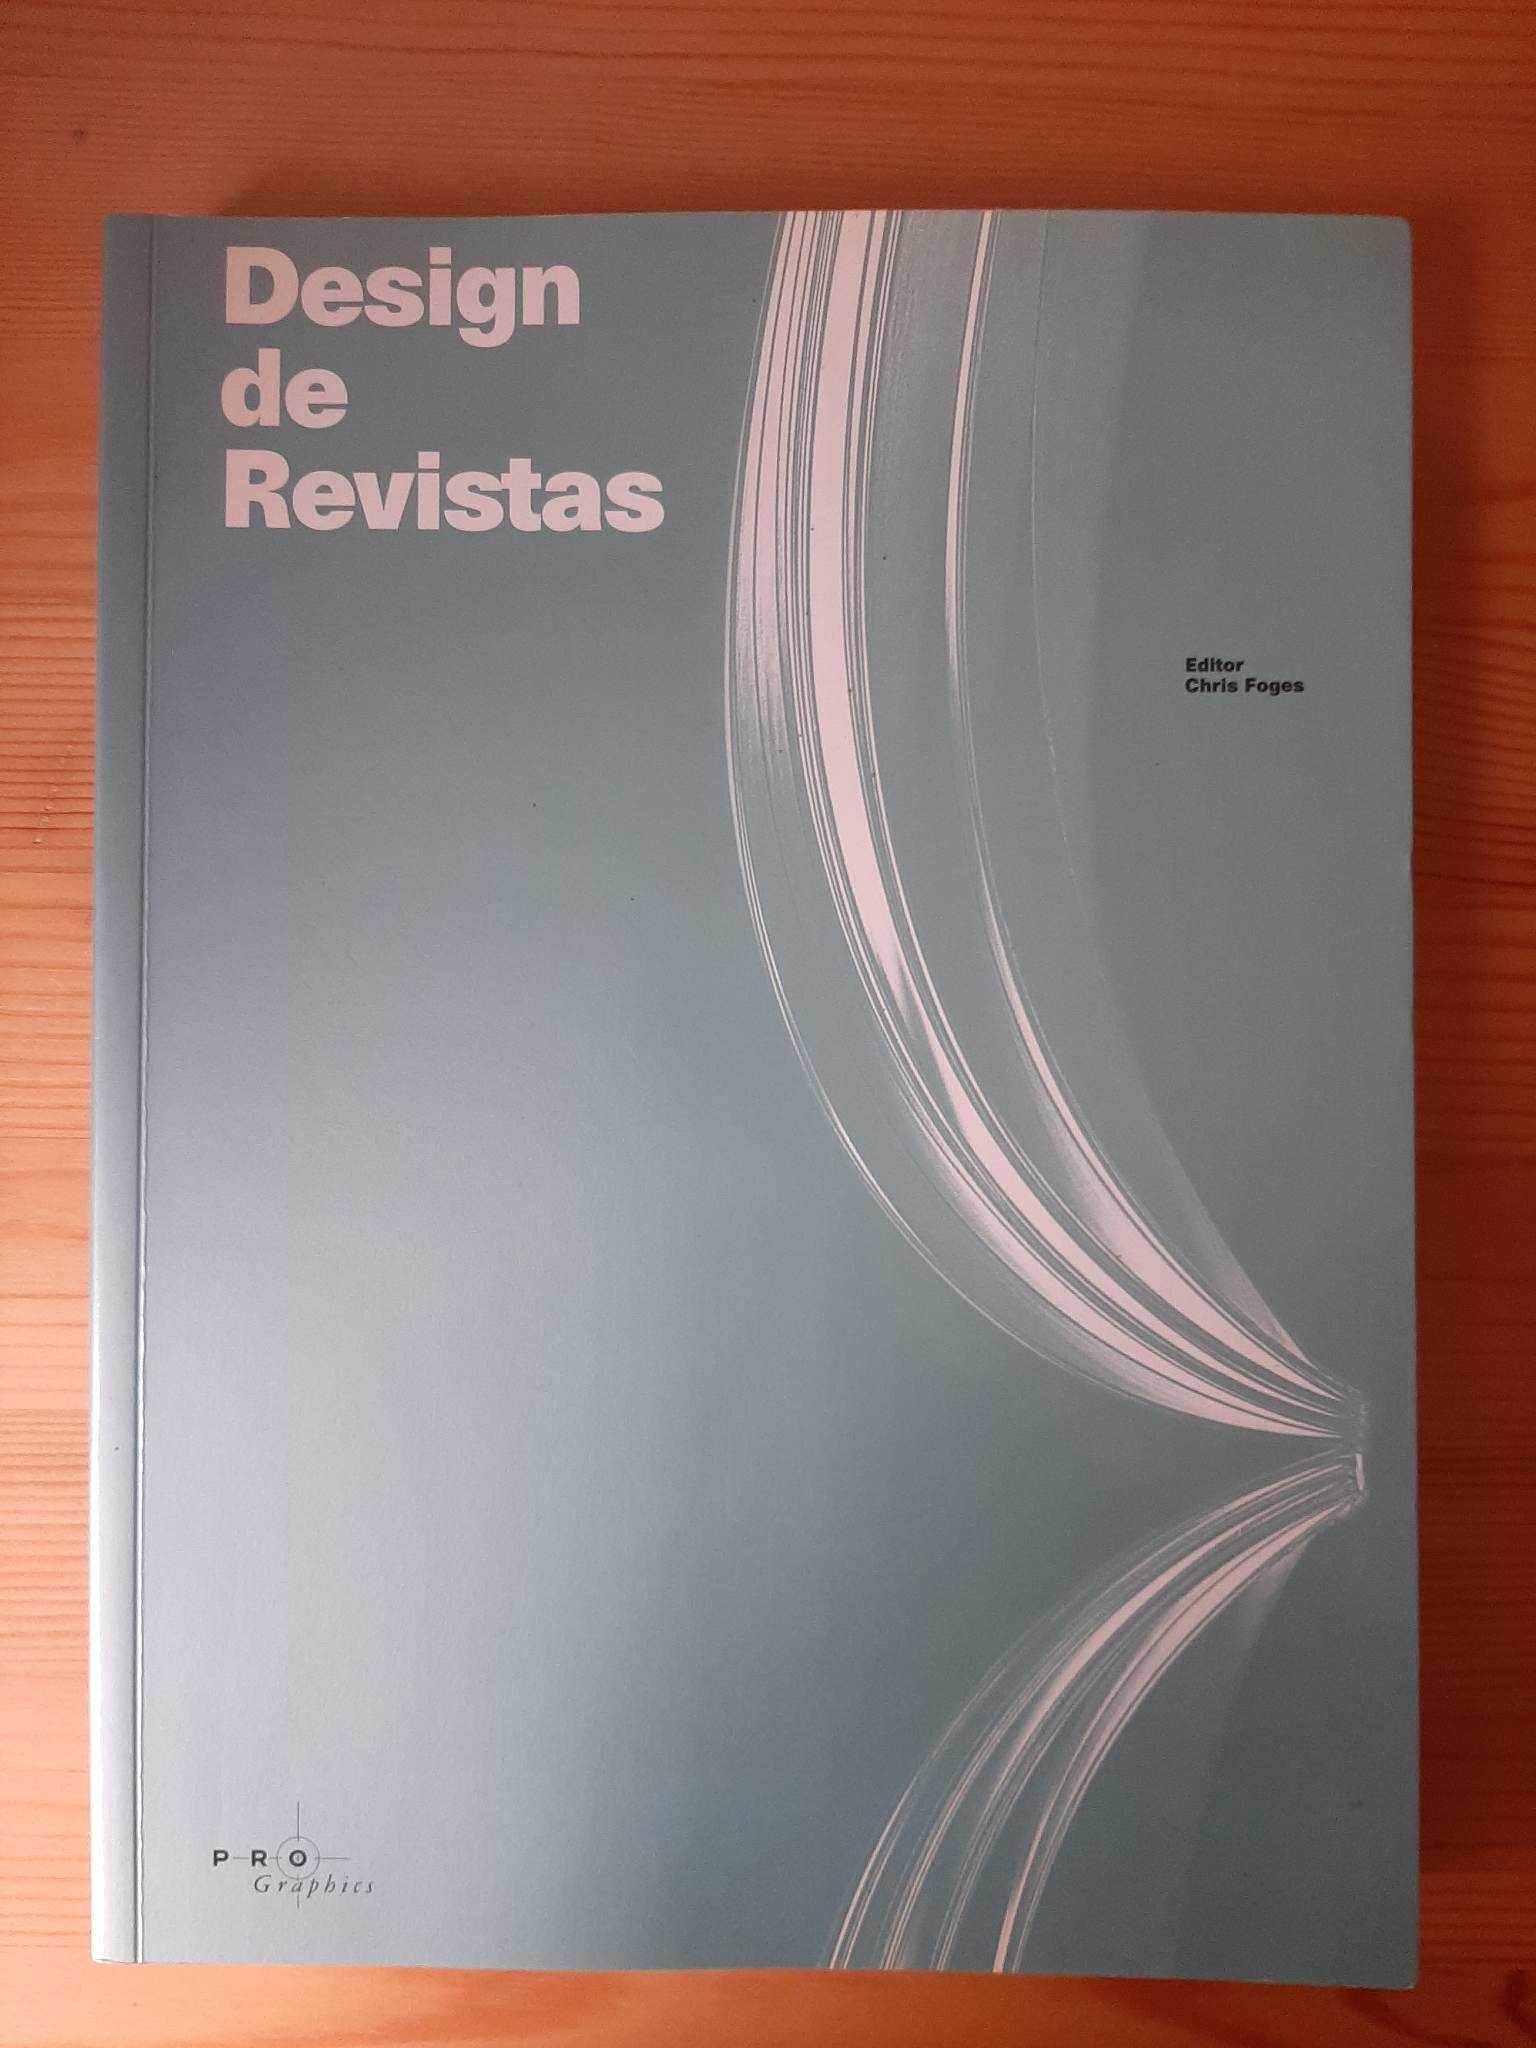 Design de Revistas (Chris Foges)